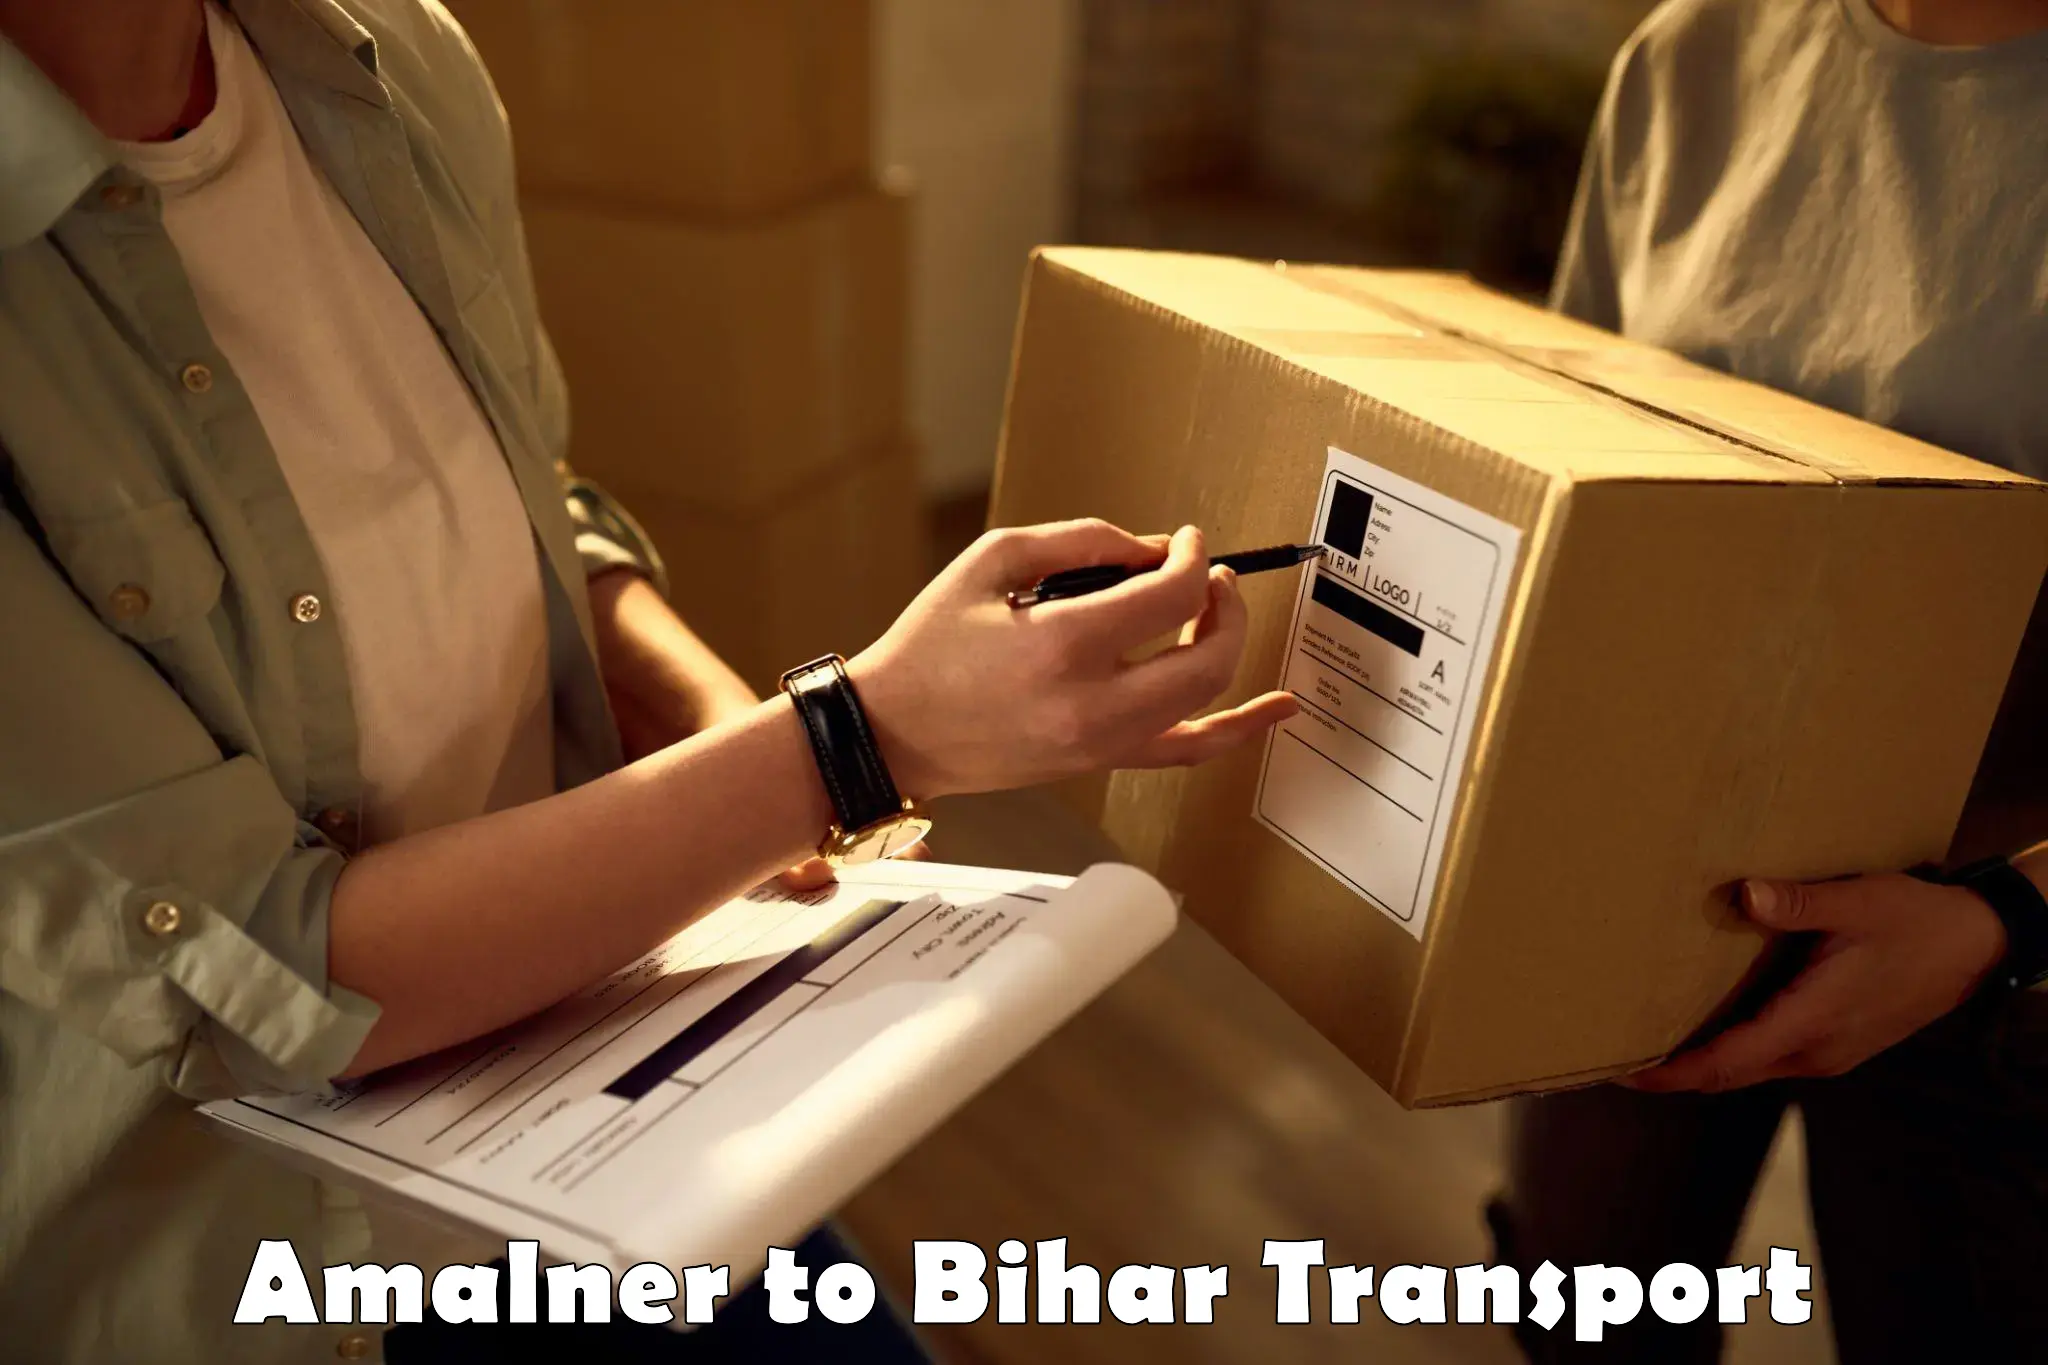 Transportation solution services Amalner to Aurangabad Bihar